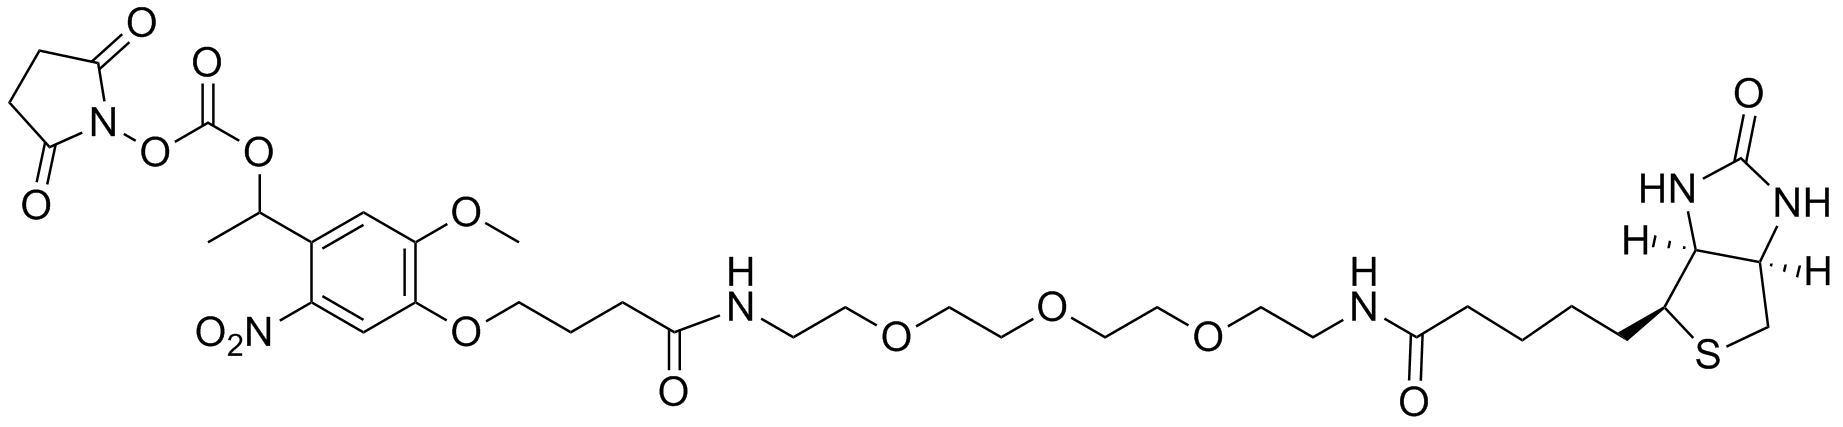 PC Biotin-NHS ester